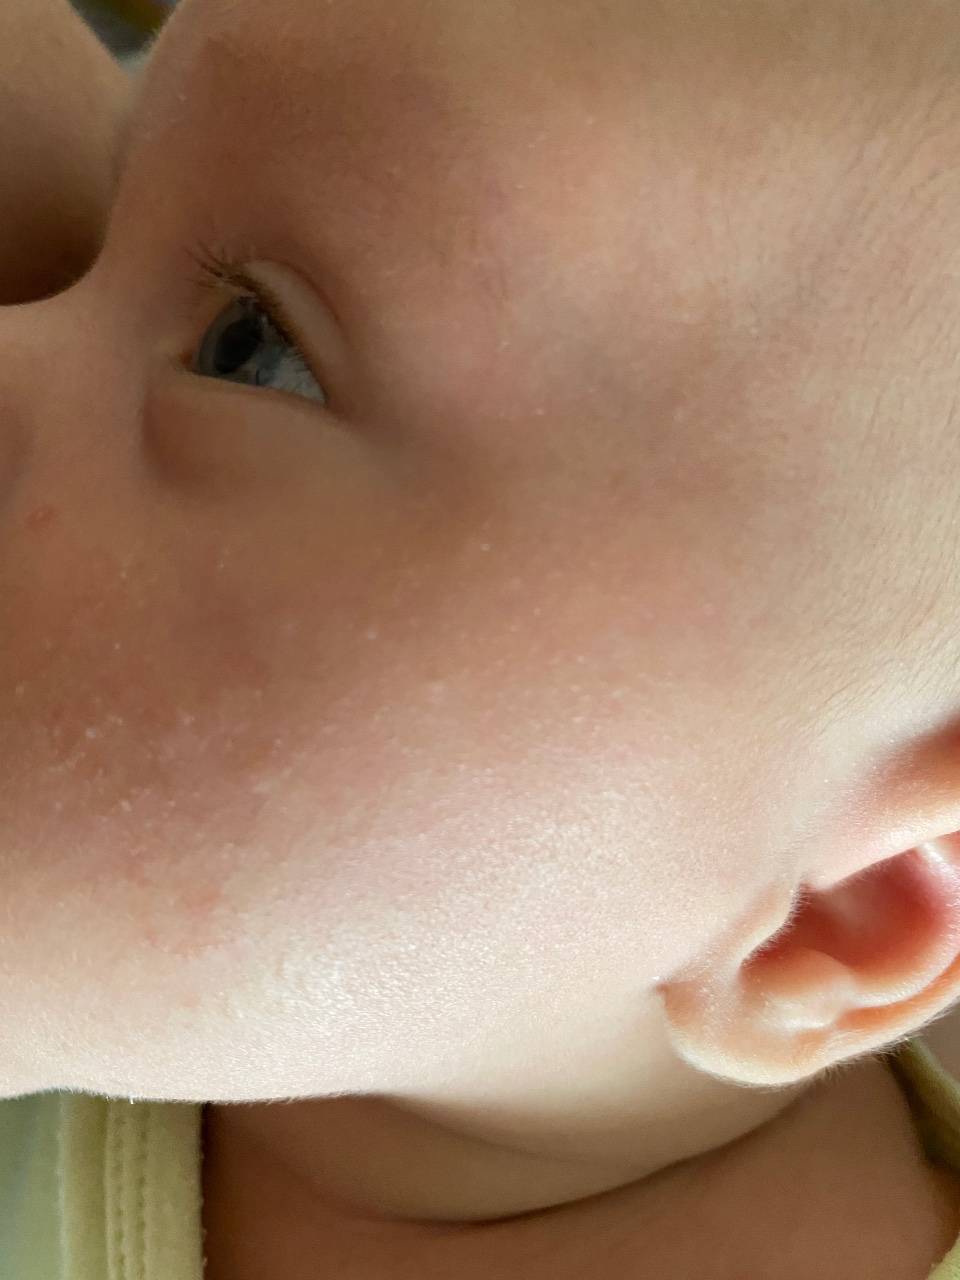 Крапивница у детей: симптомы, лечение | как выглядит крапивница у ребенка, фото